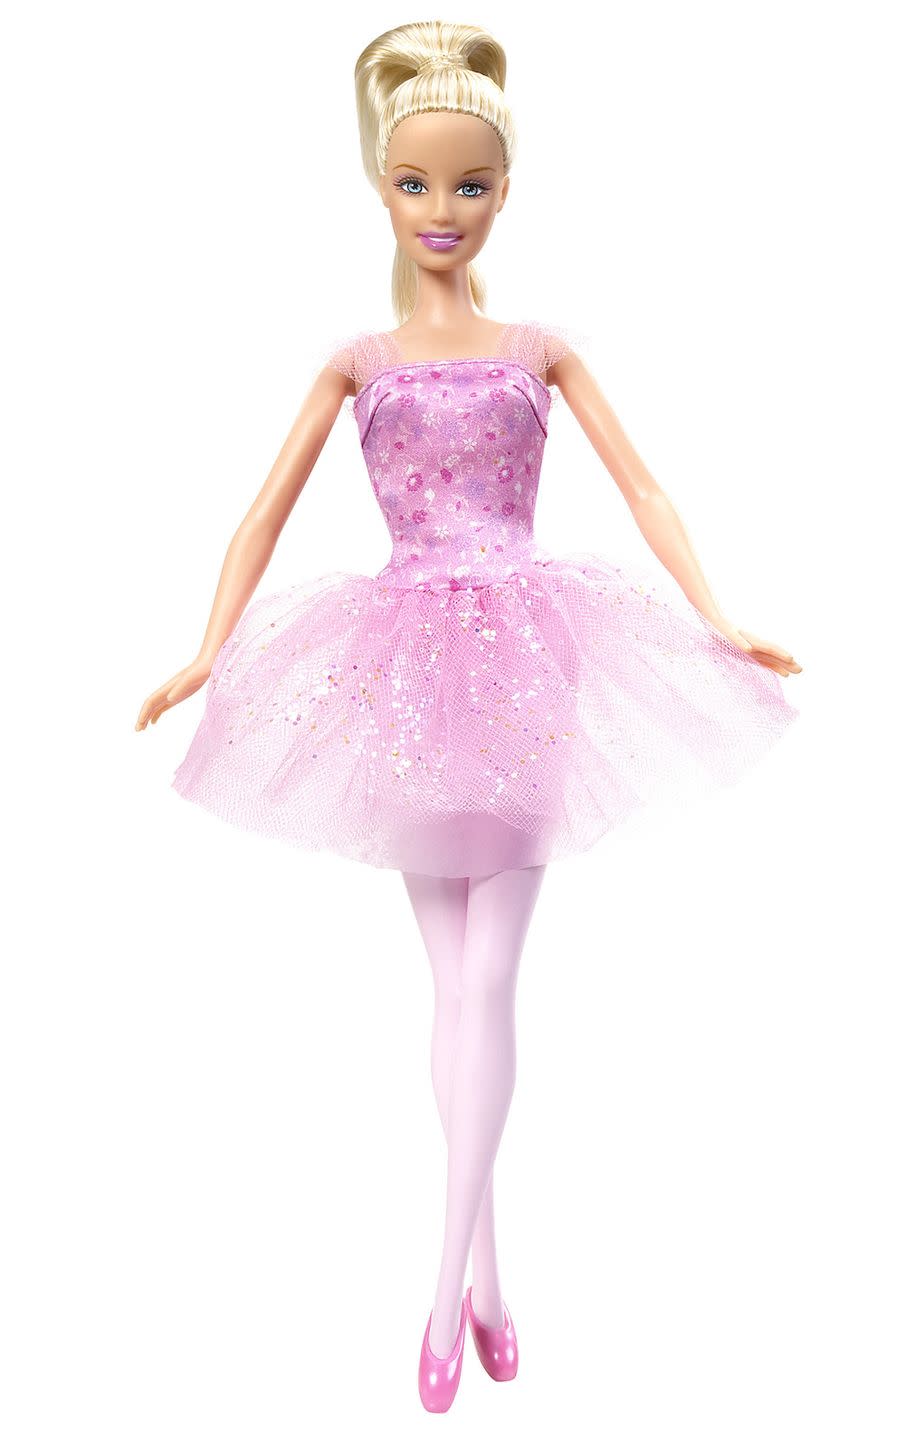 Doll, Clothing, Dress, Pink, Barbie, Toy, Ballet tutu, Lilac, Ballet dancer, Costume, 